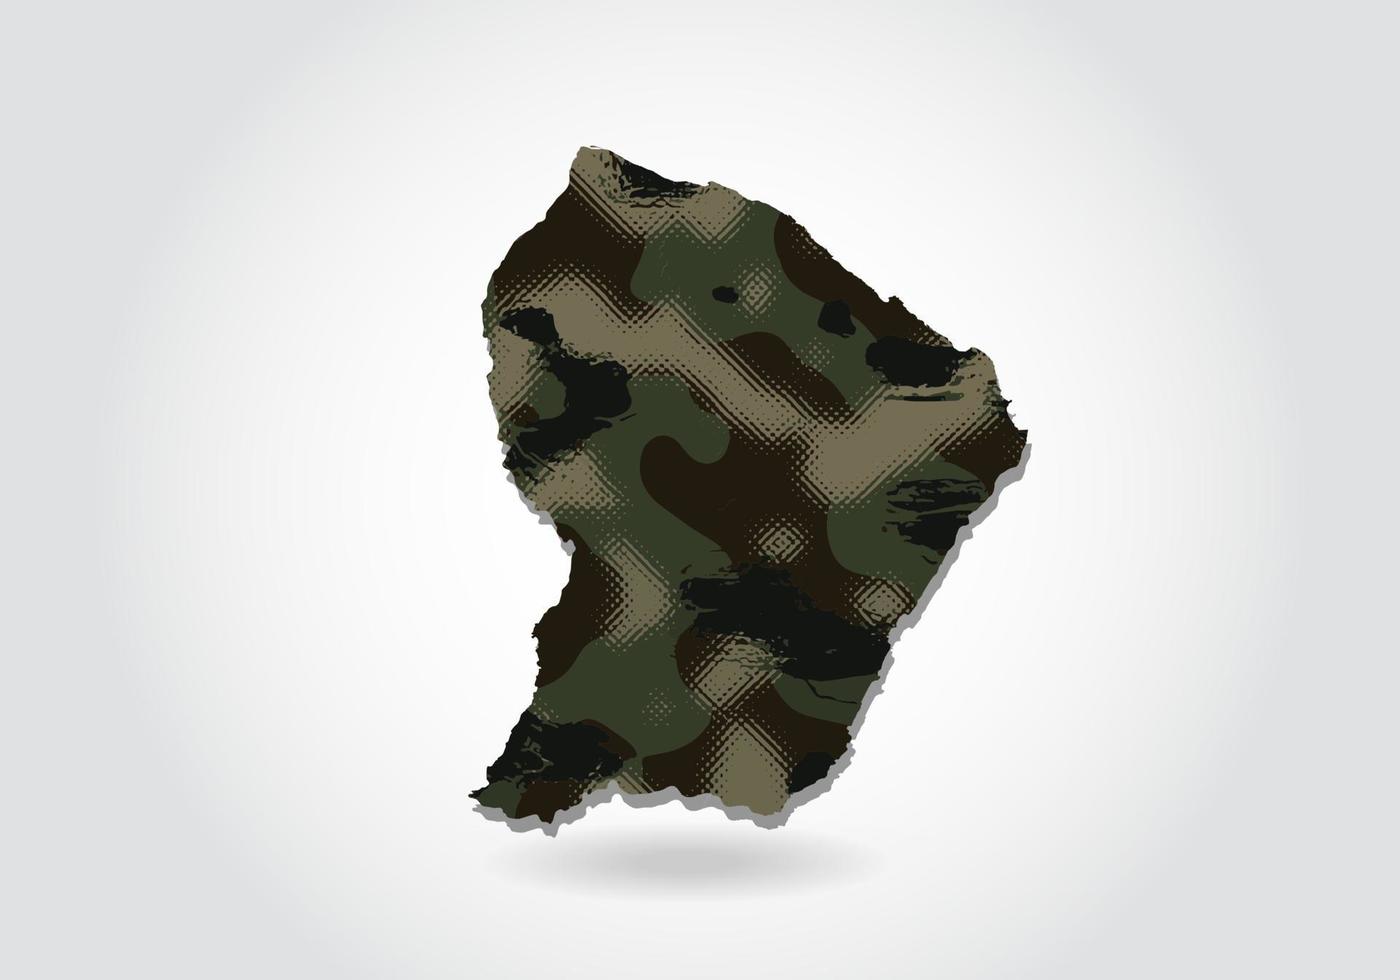 mappa della guiana francese con motivo mimetico, foresta - trama verde nella mappa. concetto militare per esercito, soldato e guerra. stemma, bandiera. vettore